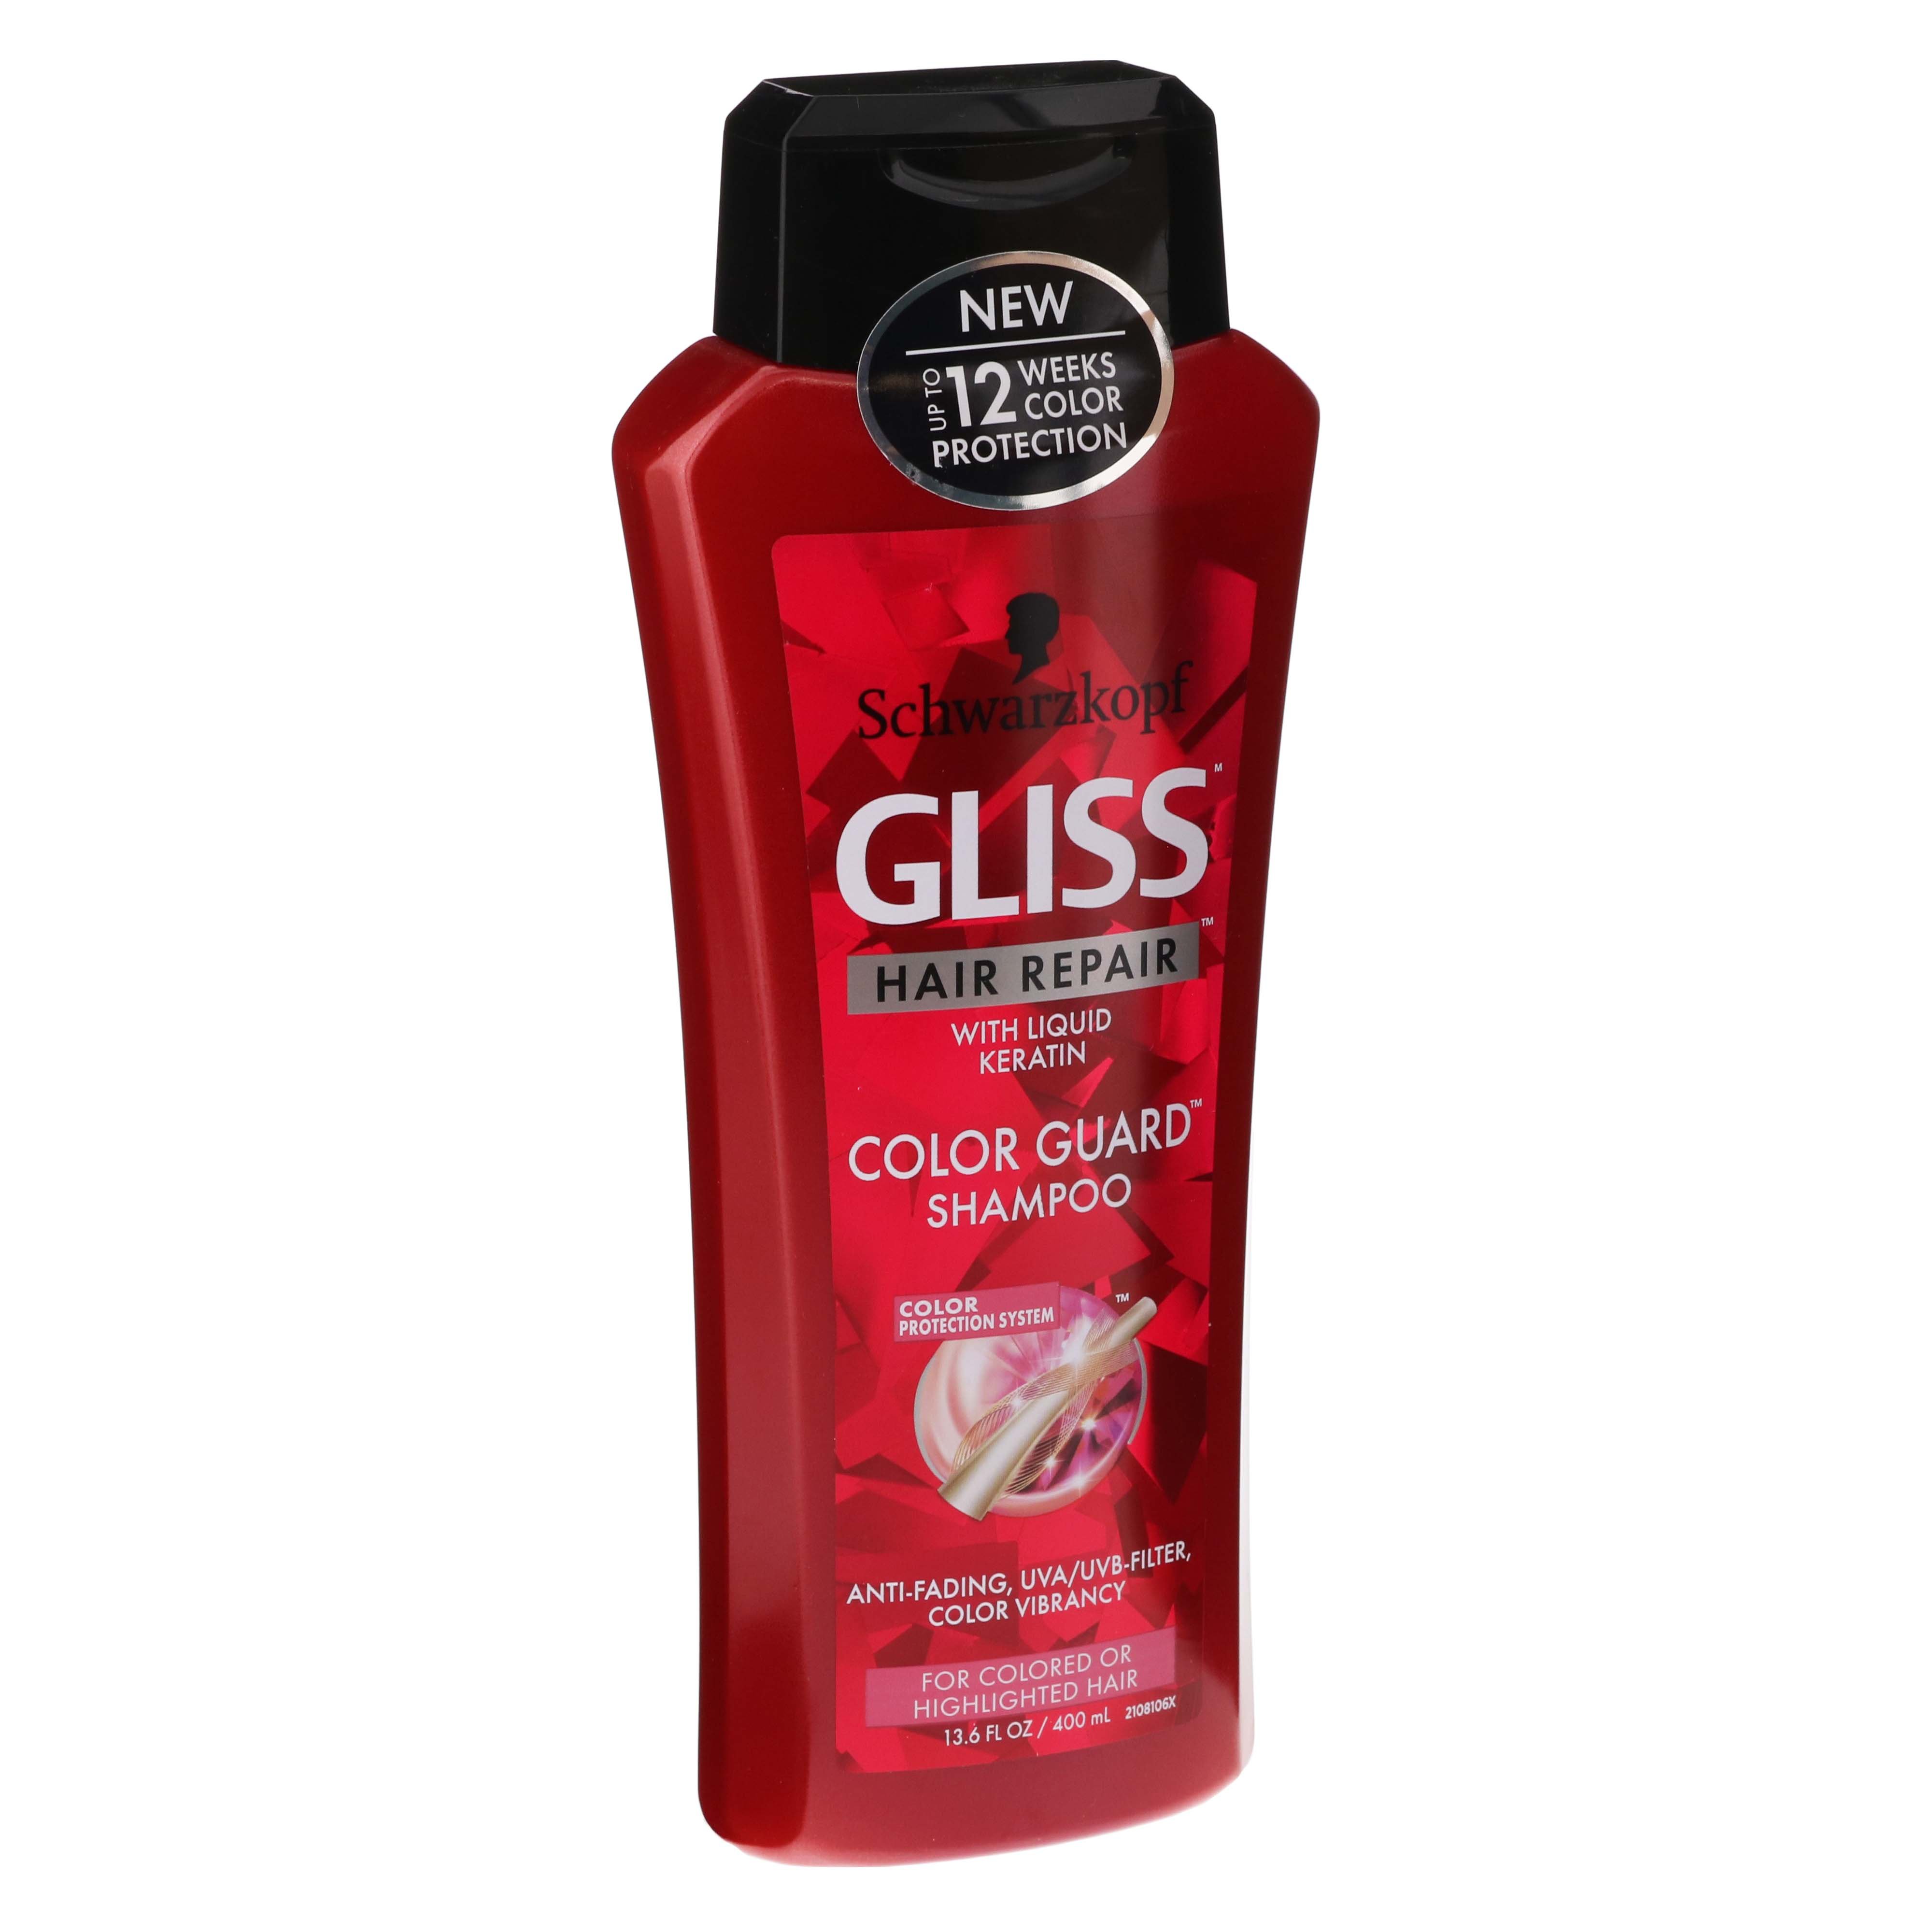 Gliss Hair Repair Shampoo - Shop Shampoo & Conditioner at H-E-B